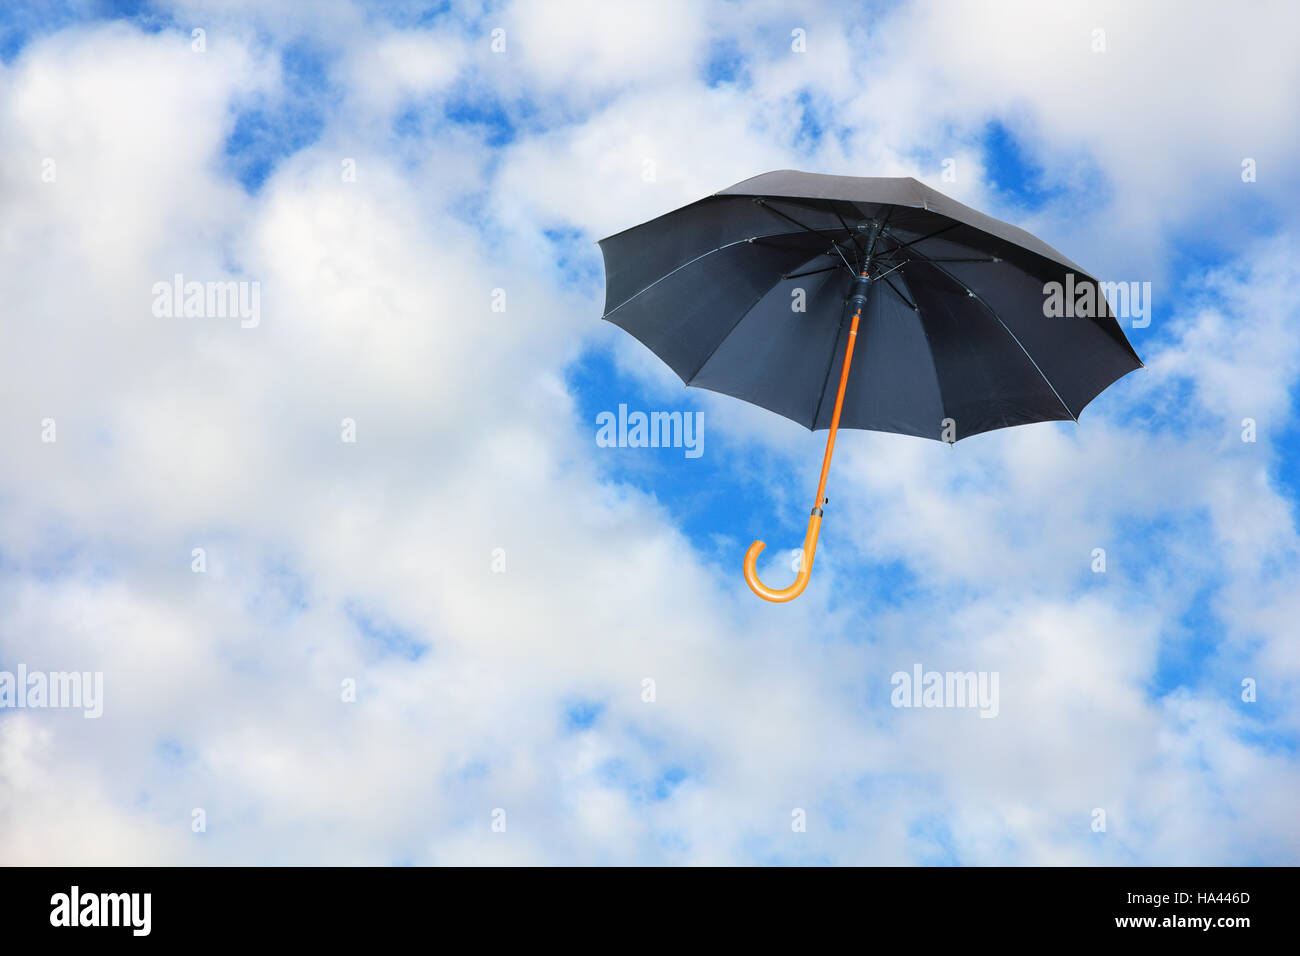 Parapluie noir vole dans le ciel contre des nuages d'un blanc pur.Mary Poppins Umbrella.vent de changement concept. Banque D'Images